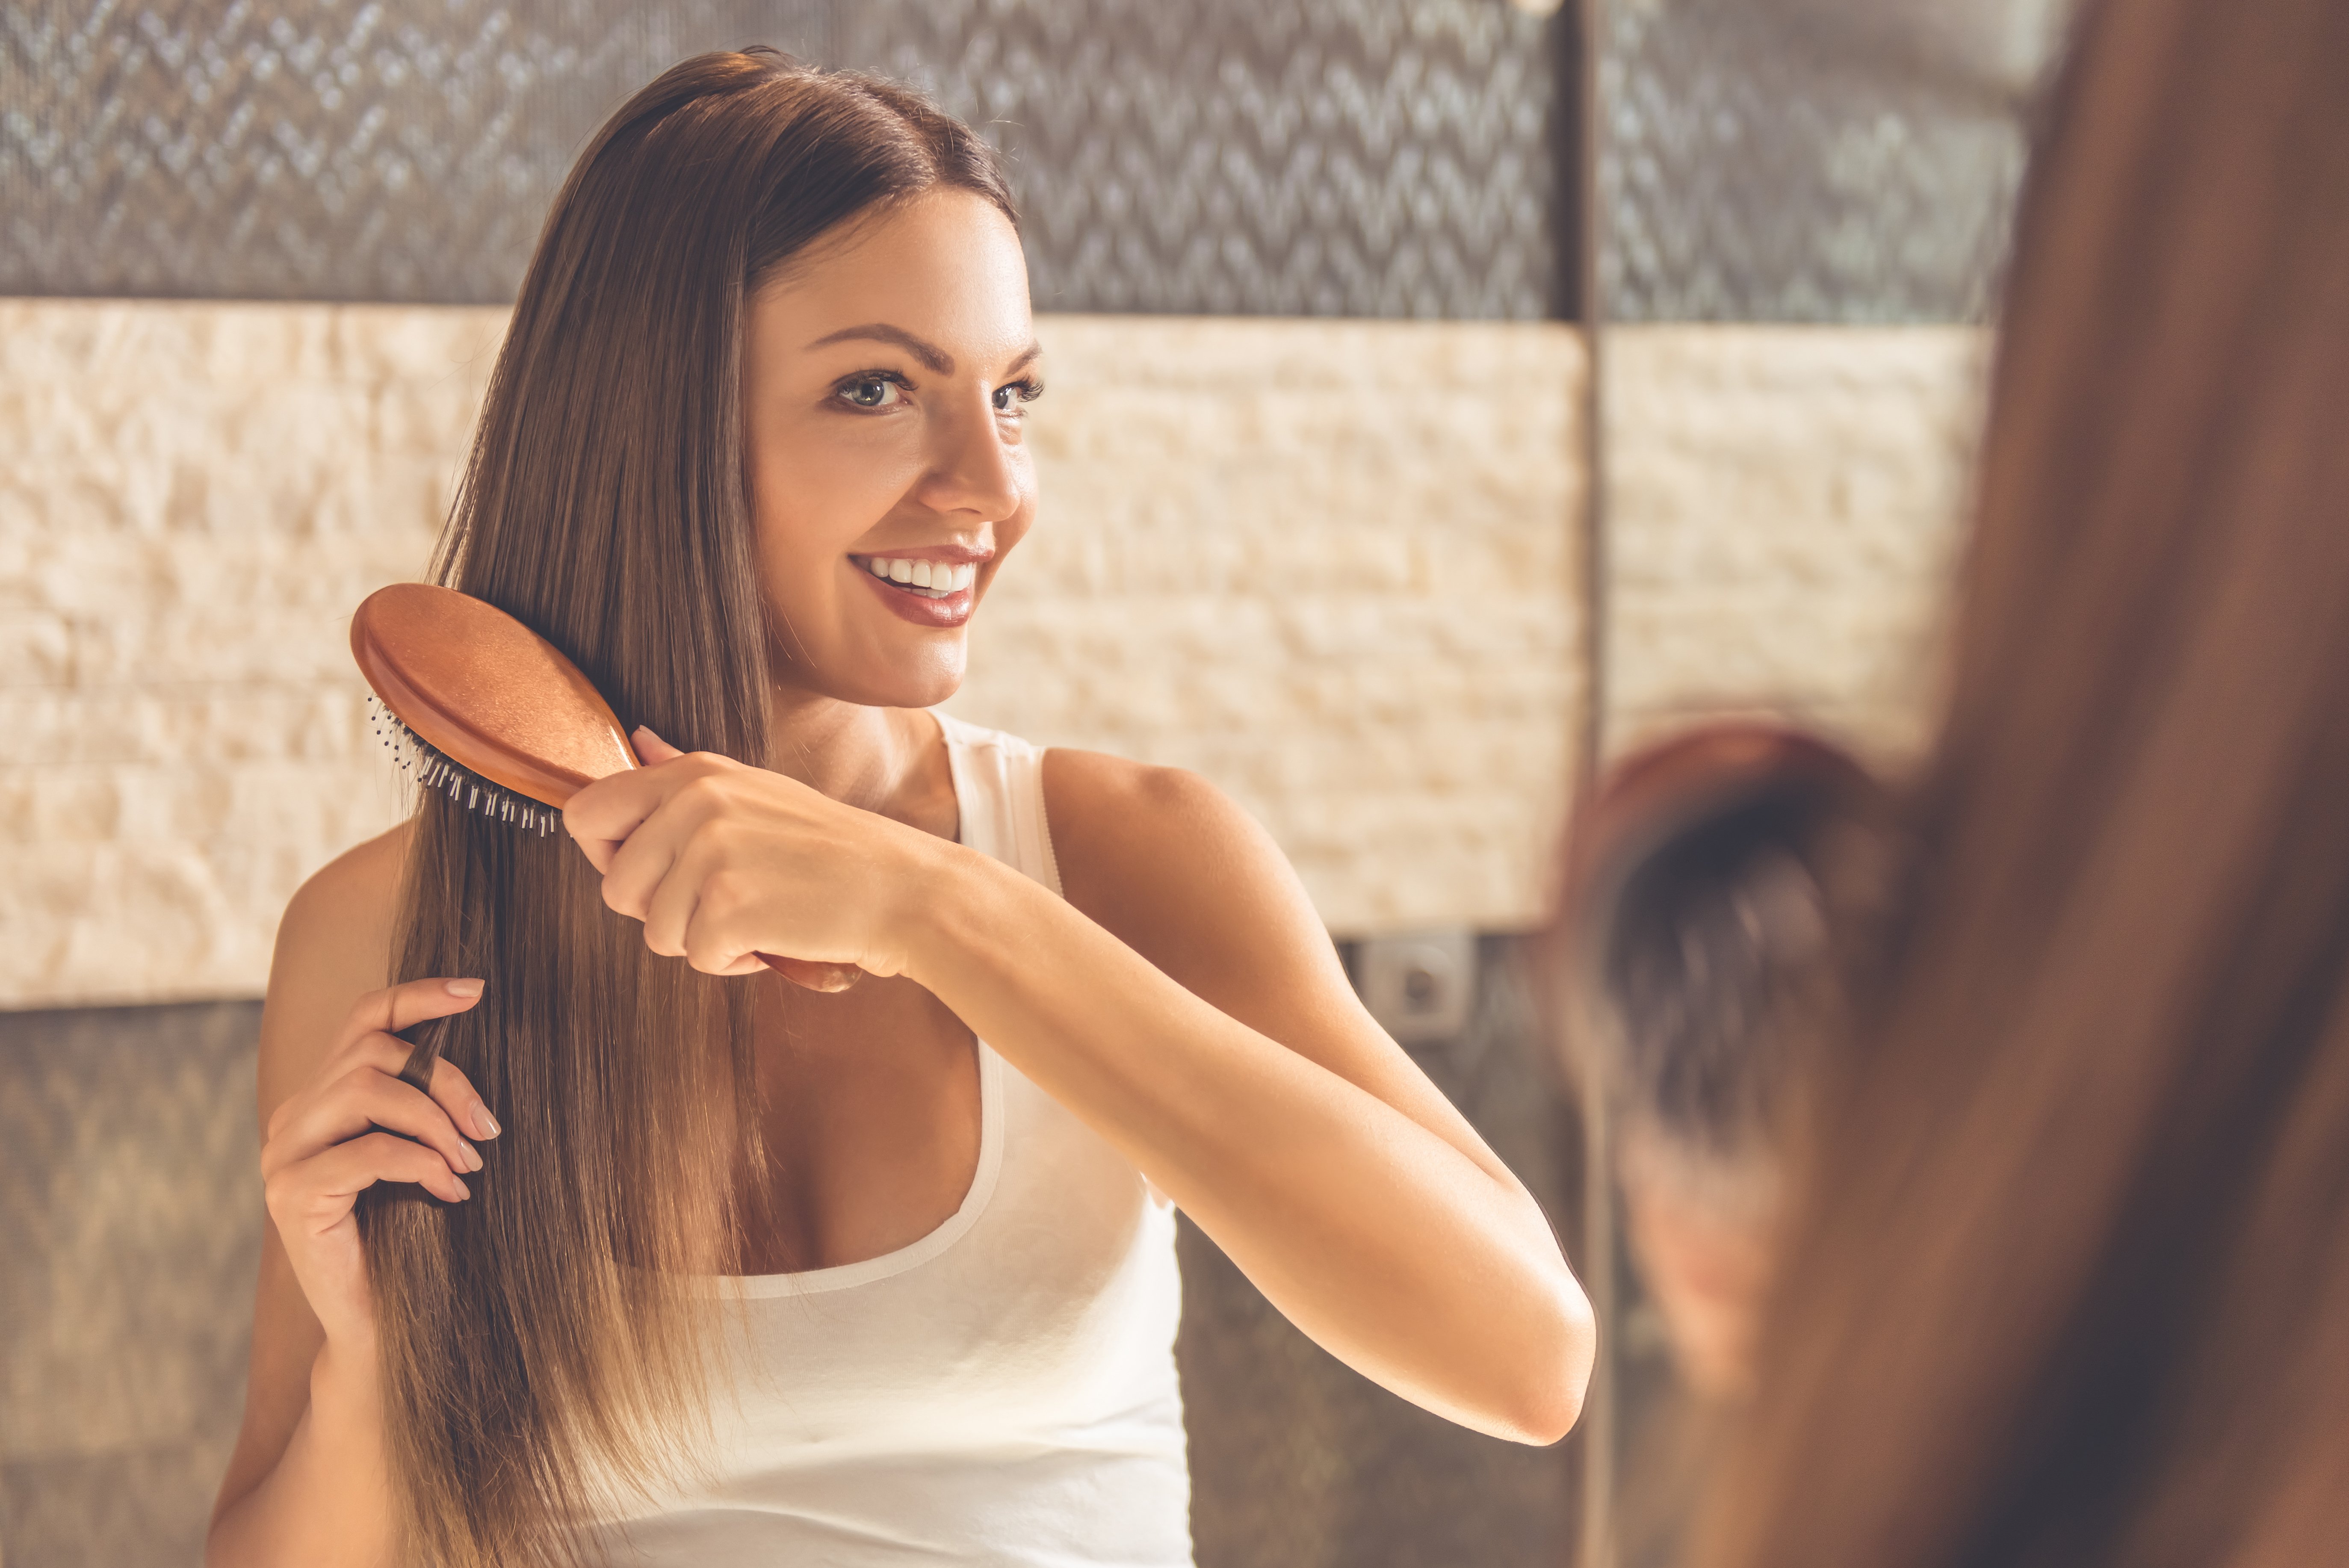 Schöne junge Frau kämmt ihre Haare | Quelle: Shutterstock